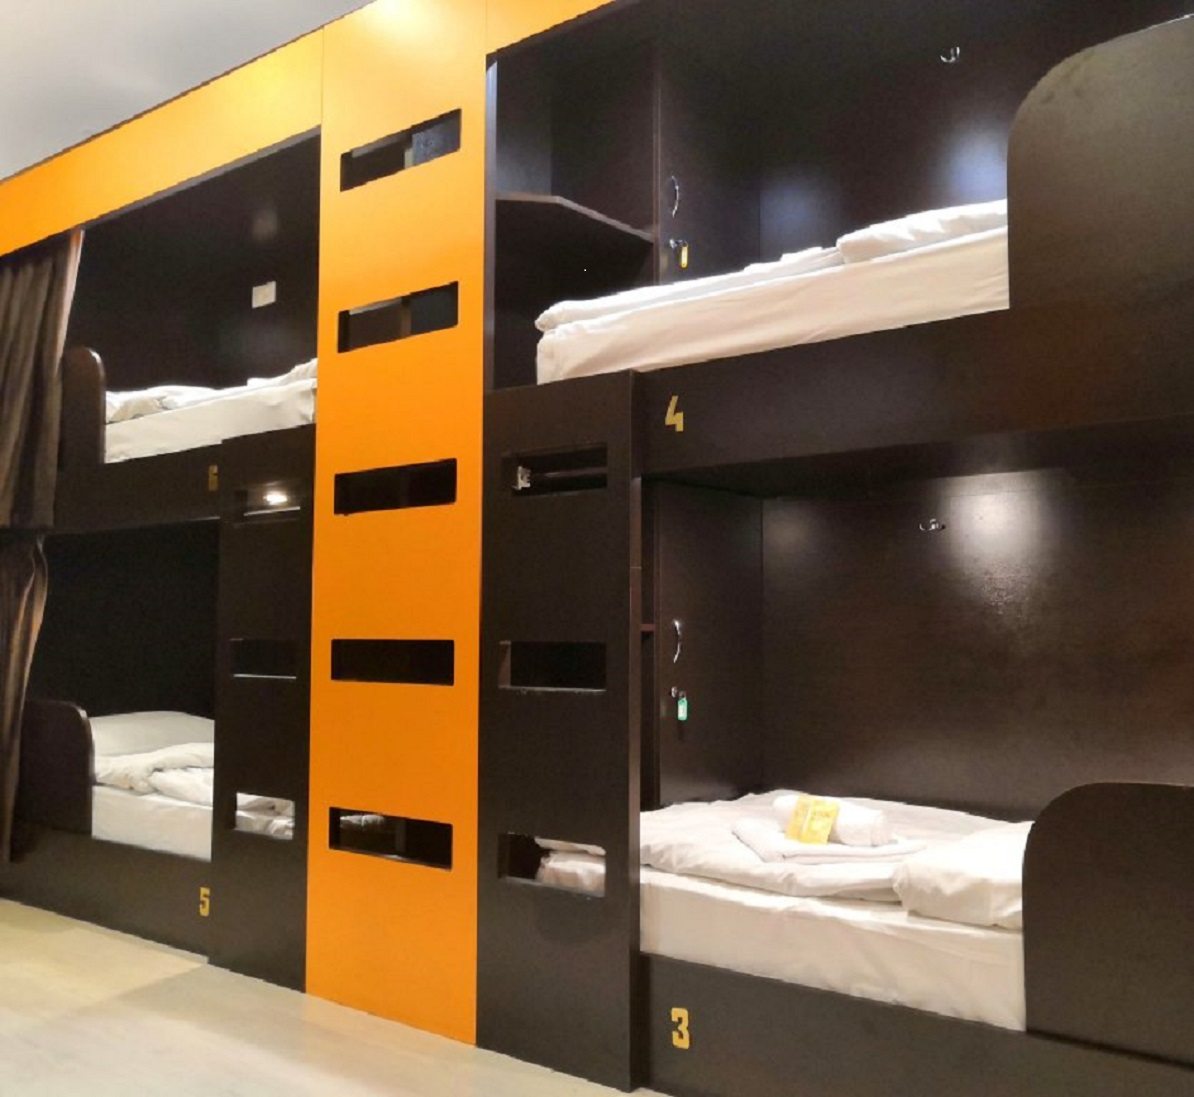 Двенадцатиместный (Orange - Нижнее спальное место в общей комнате для мужчин и женщин), Хостел Mariel